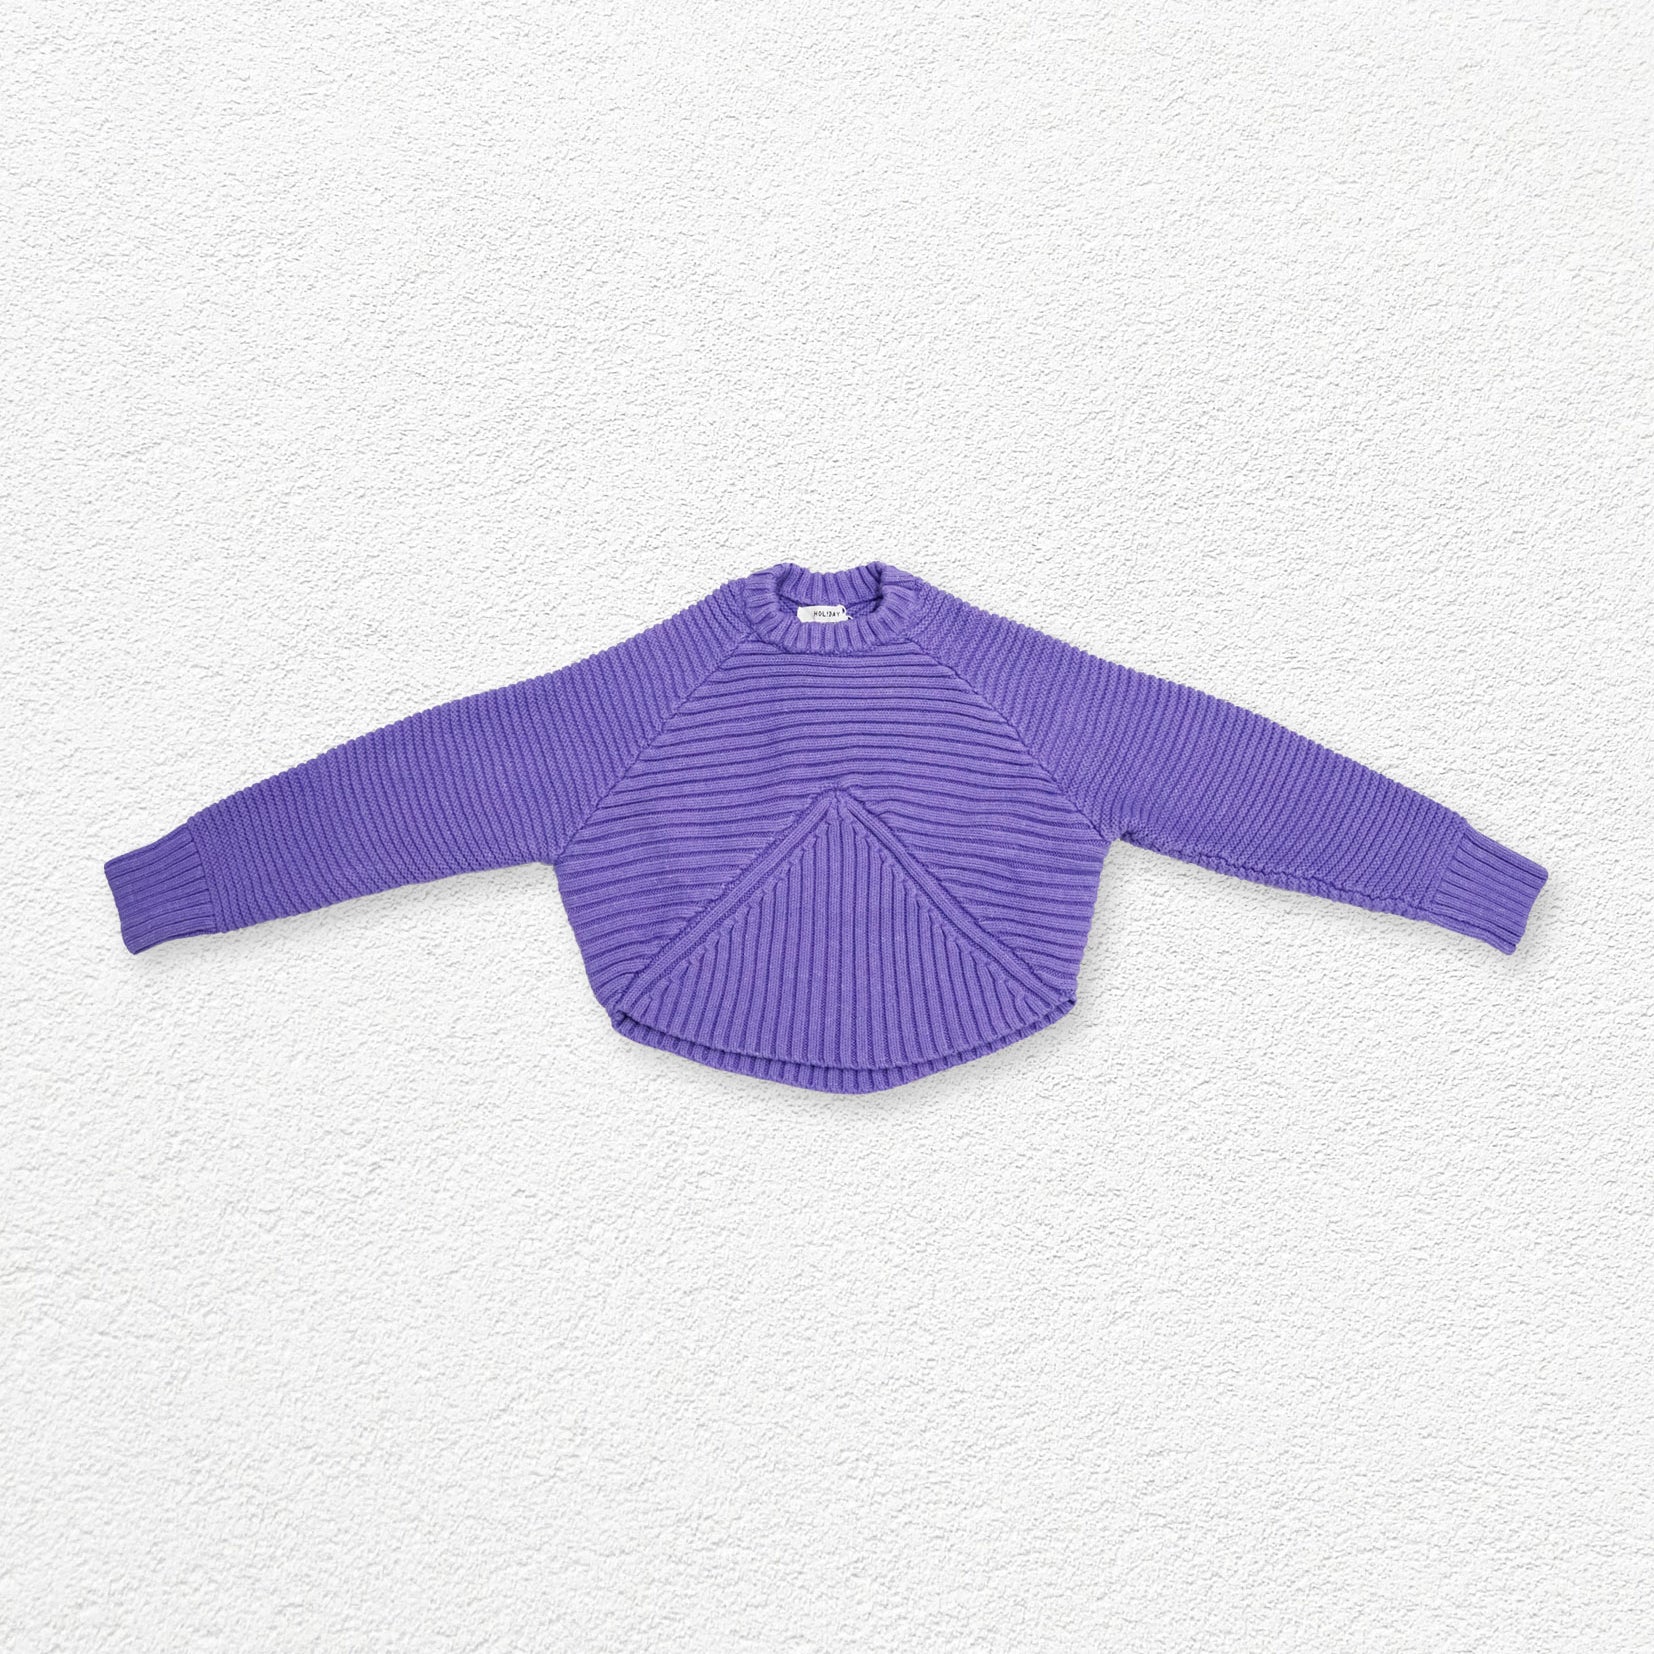 Shell textured coarse knit jumper - medium purple